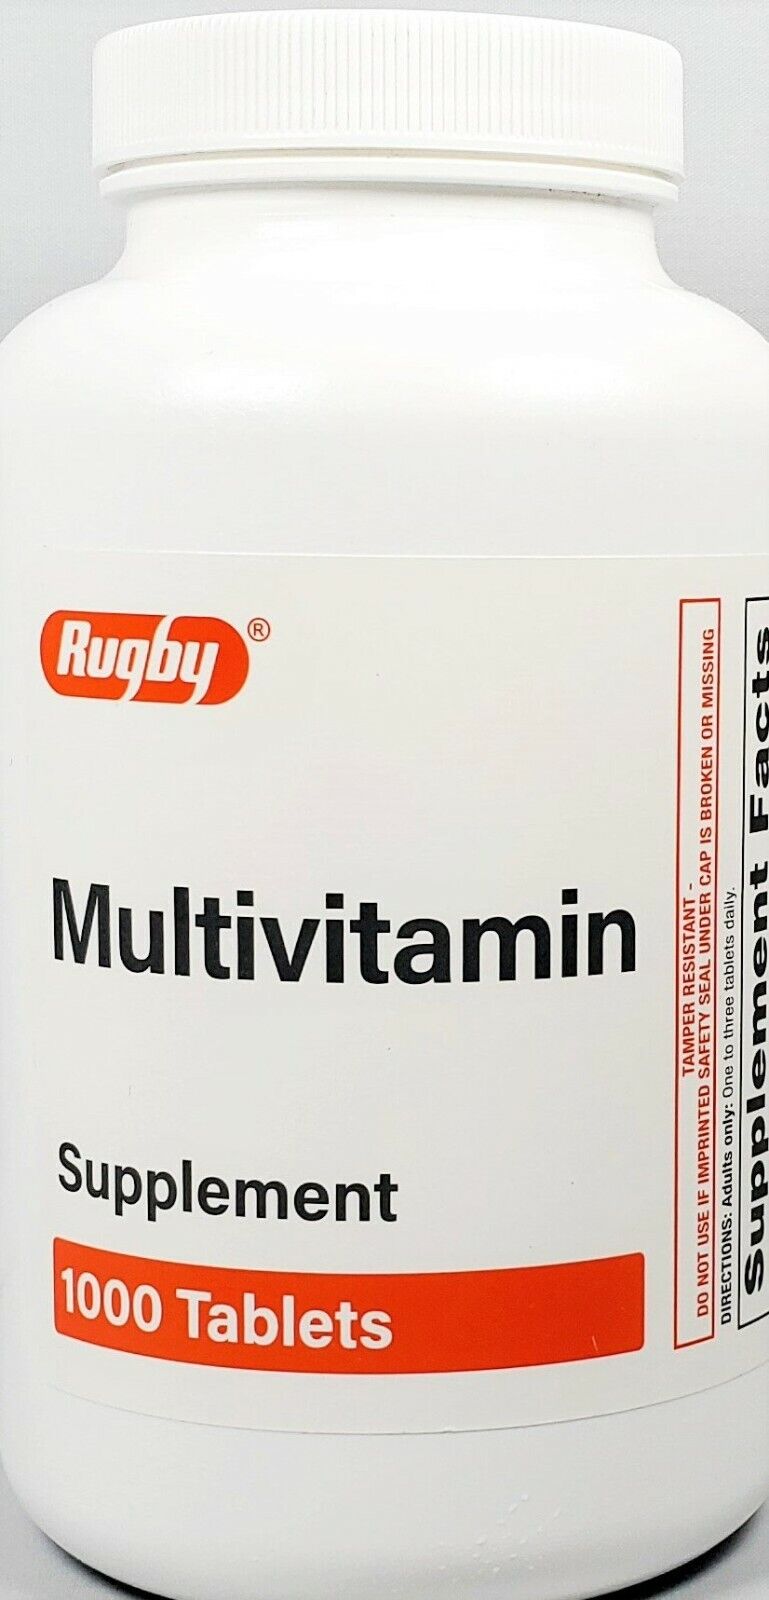 [756987] Adult Multivitamin Tab 1000/Btl Supplement